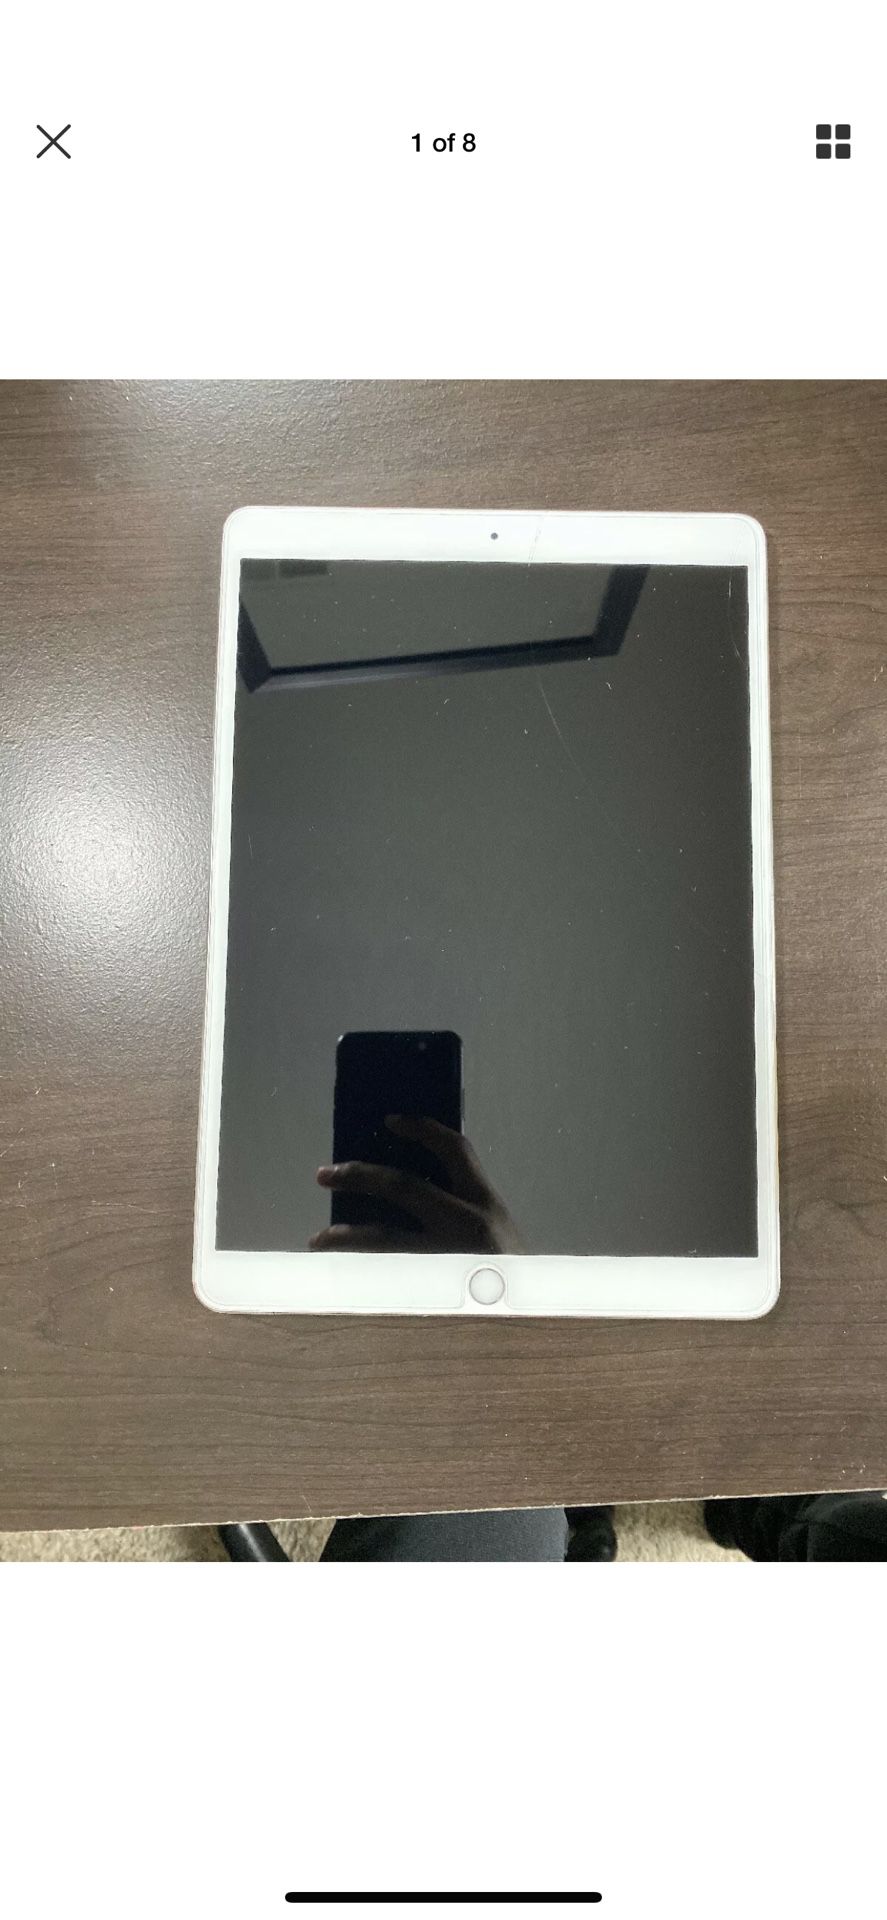 Apple iPad Pro 2nd Gen. 256GB, Wi-Fi, 10.5in - Silver W/ Logitech Keyboard Case